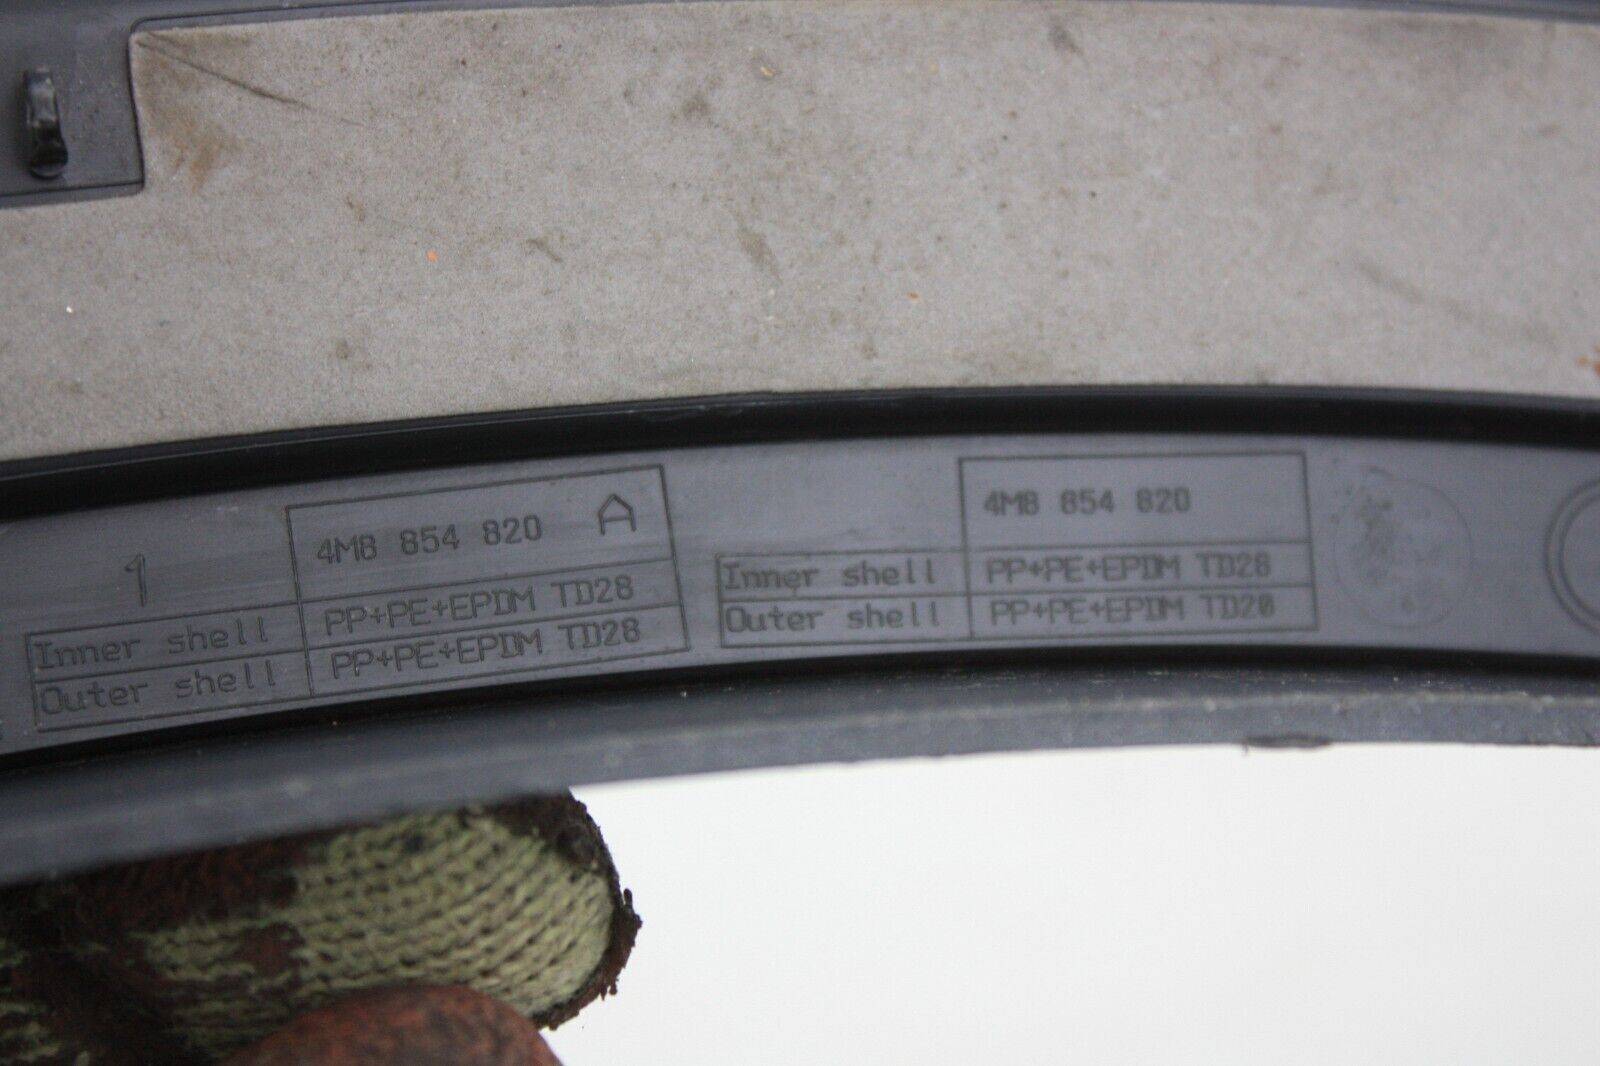 Audi-Q8-Rear-Right-Side-Wheel-Arch-4M8854820A-Genuine-175376472176-9